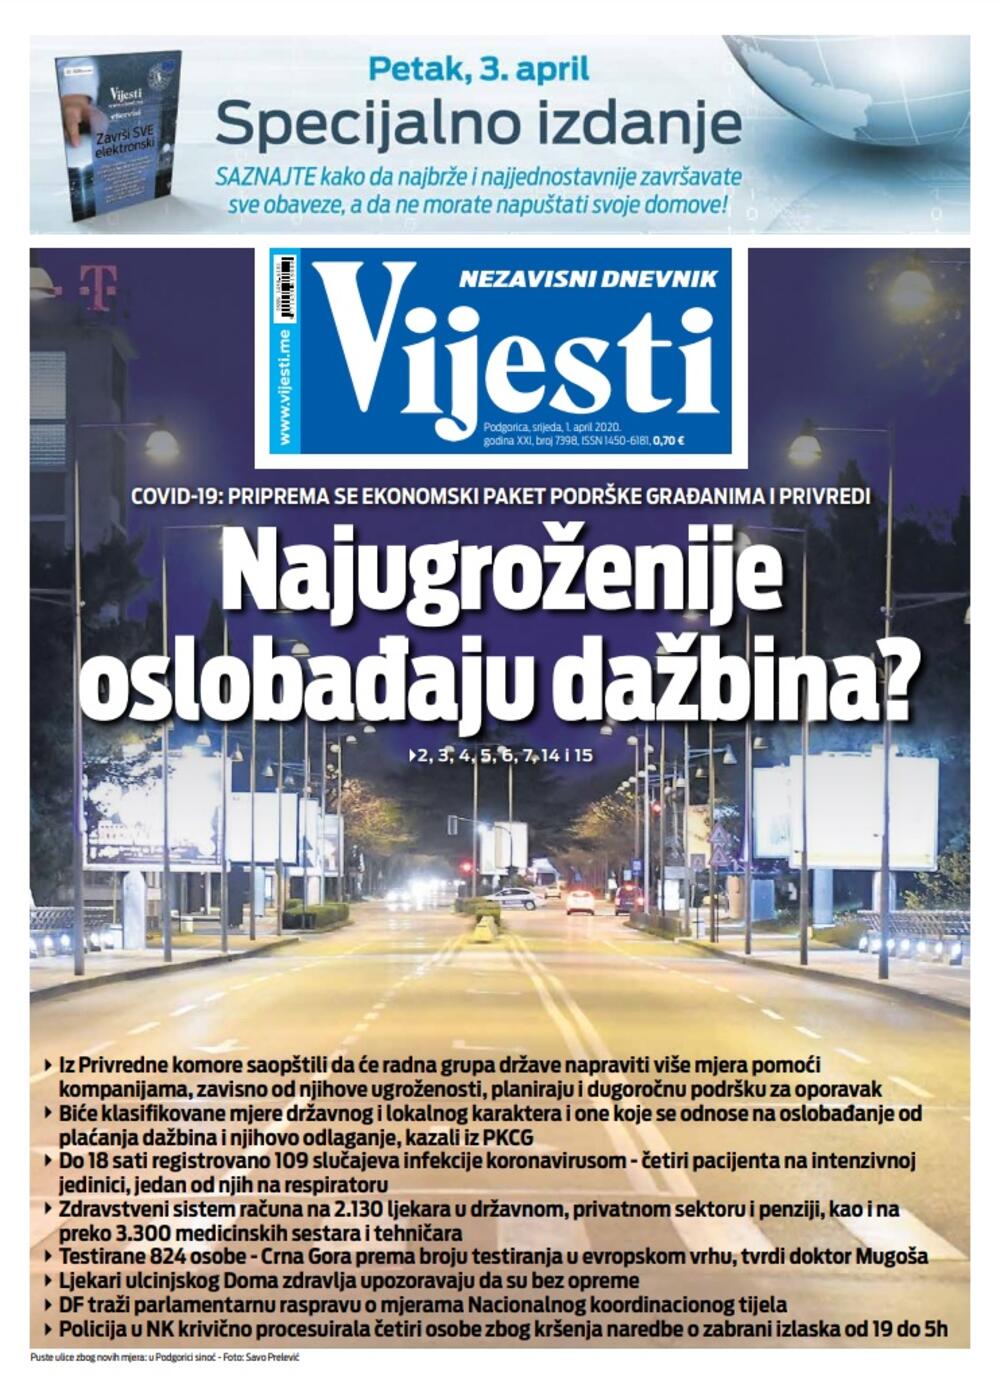 Naslovna strana "Vijesti" za 1. april 2020. godine, Foto: Vijesti